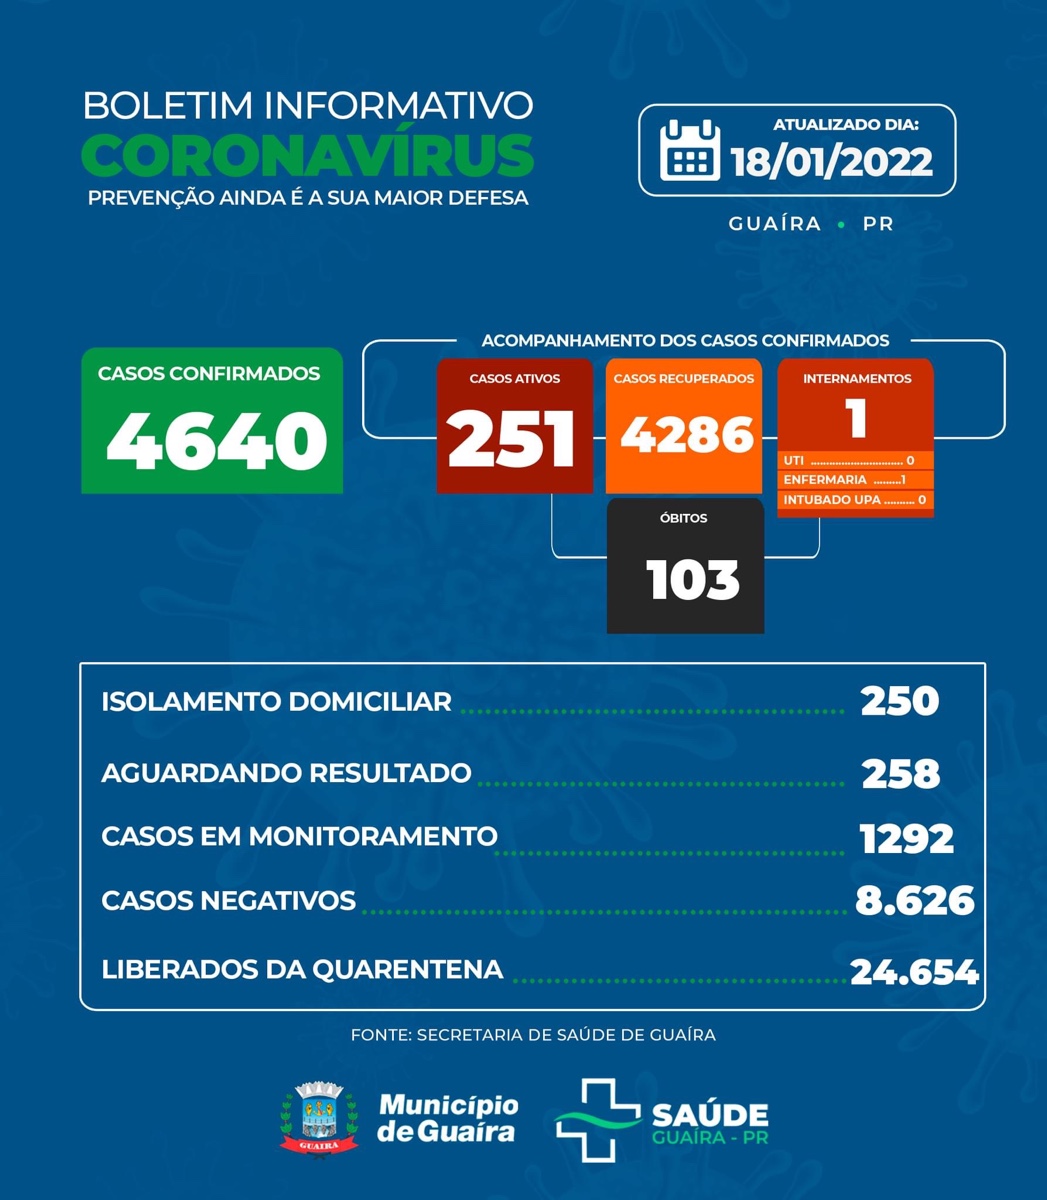 Guaíra - Covid-19: saúde informa 251 casos ativos e 258 aguardando resultado • Portal Guaíra